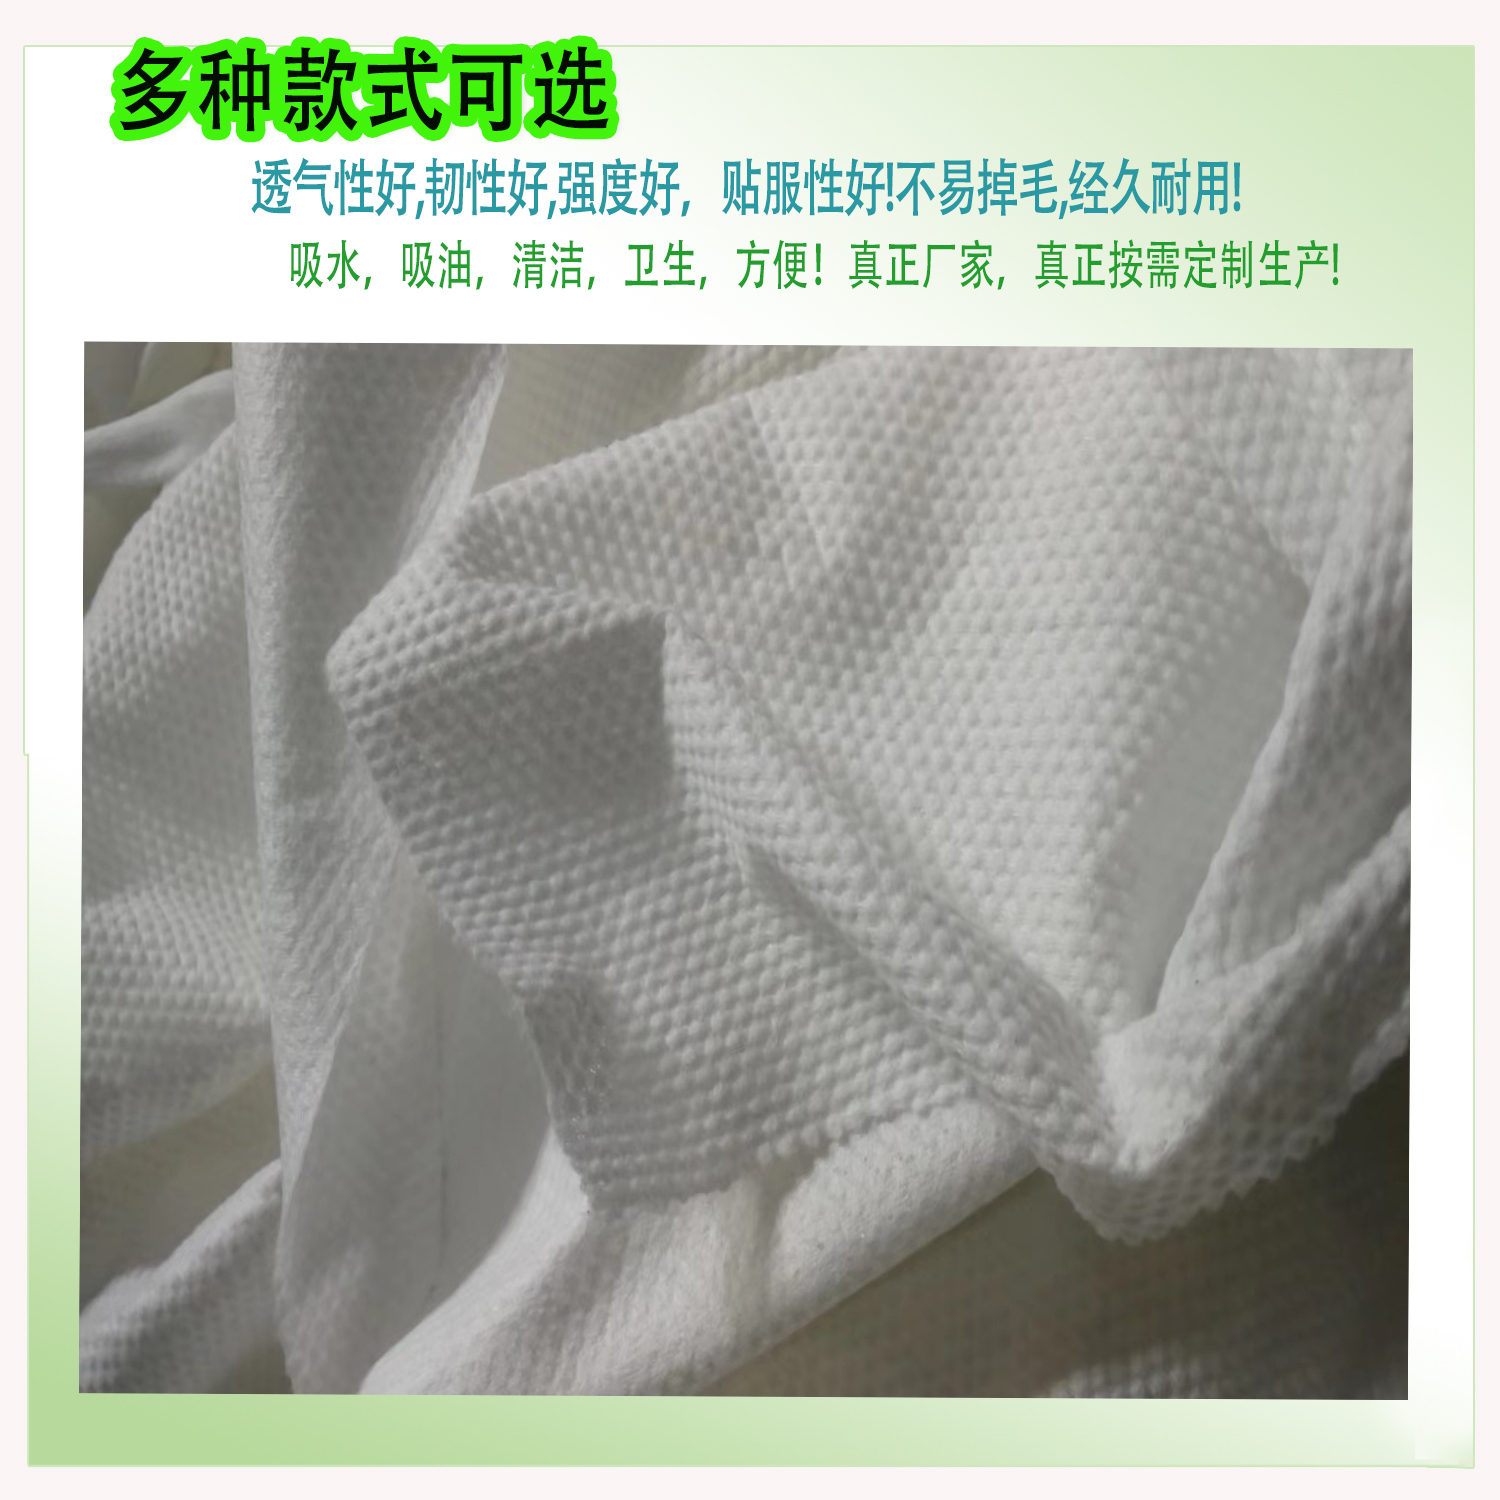 竹纤维湿巾原材料,平纹水刺无纺布,洗脸巾原材料